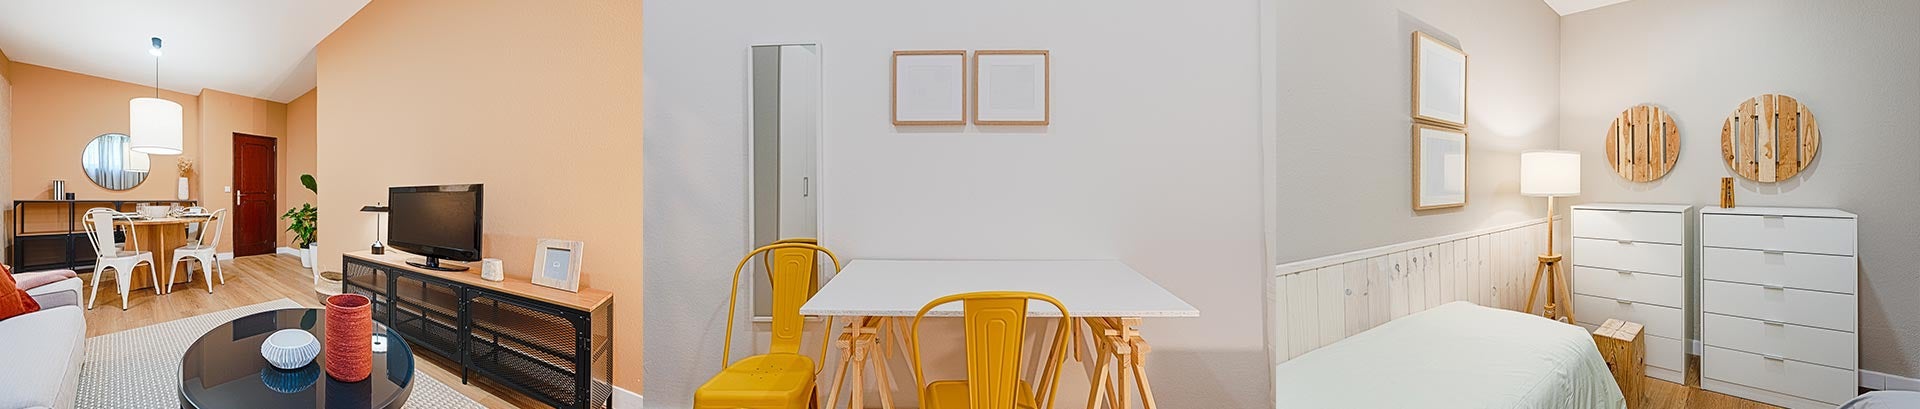 uma sala moderna de estilo industrial e um quarto simples branco com apontamentos de amarelo e madeira 